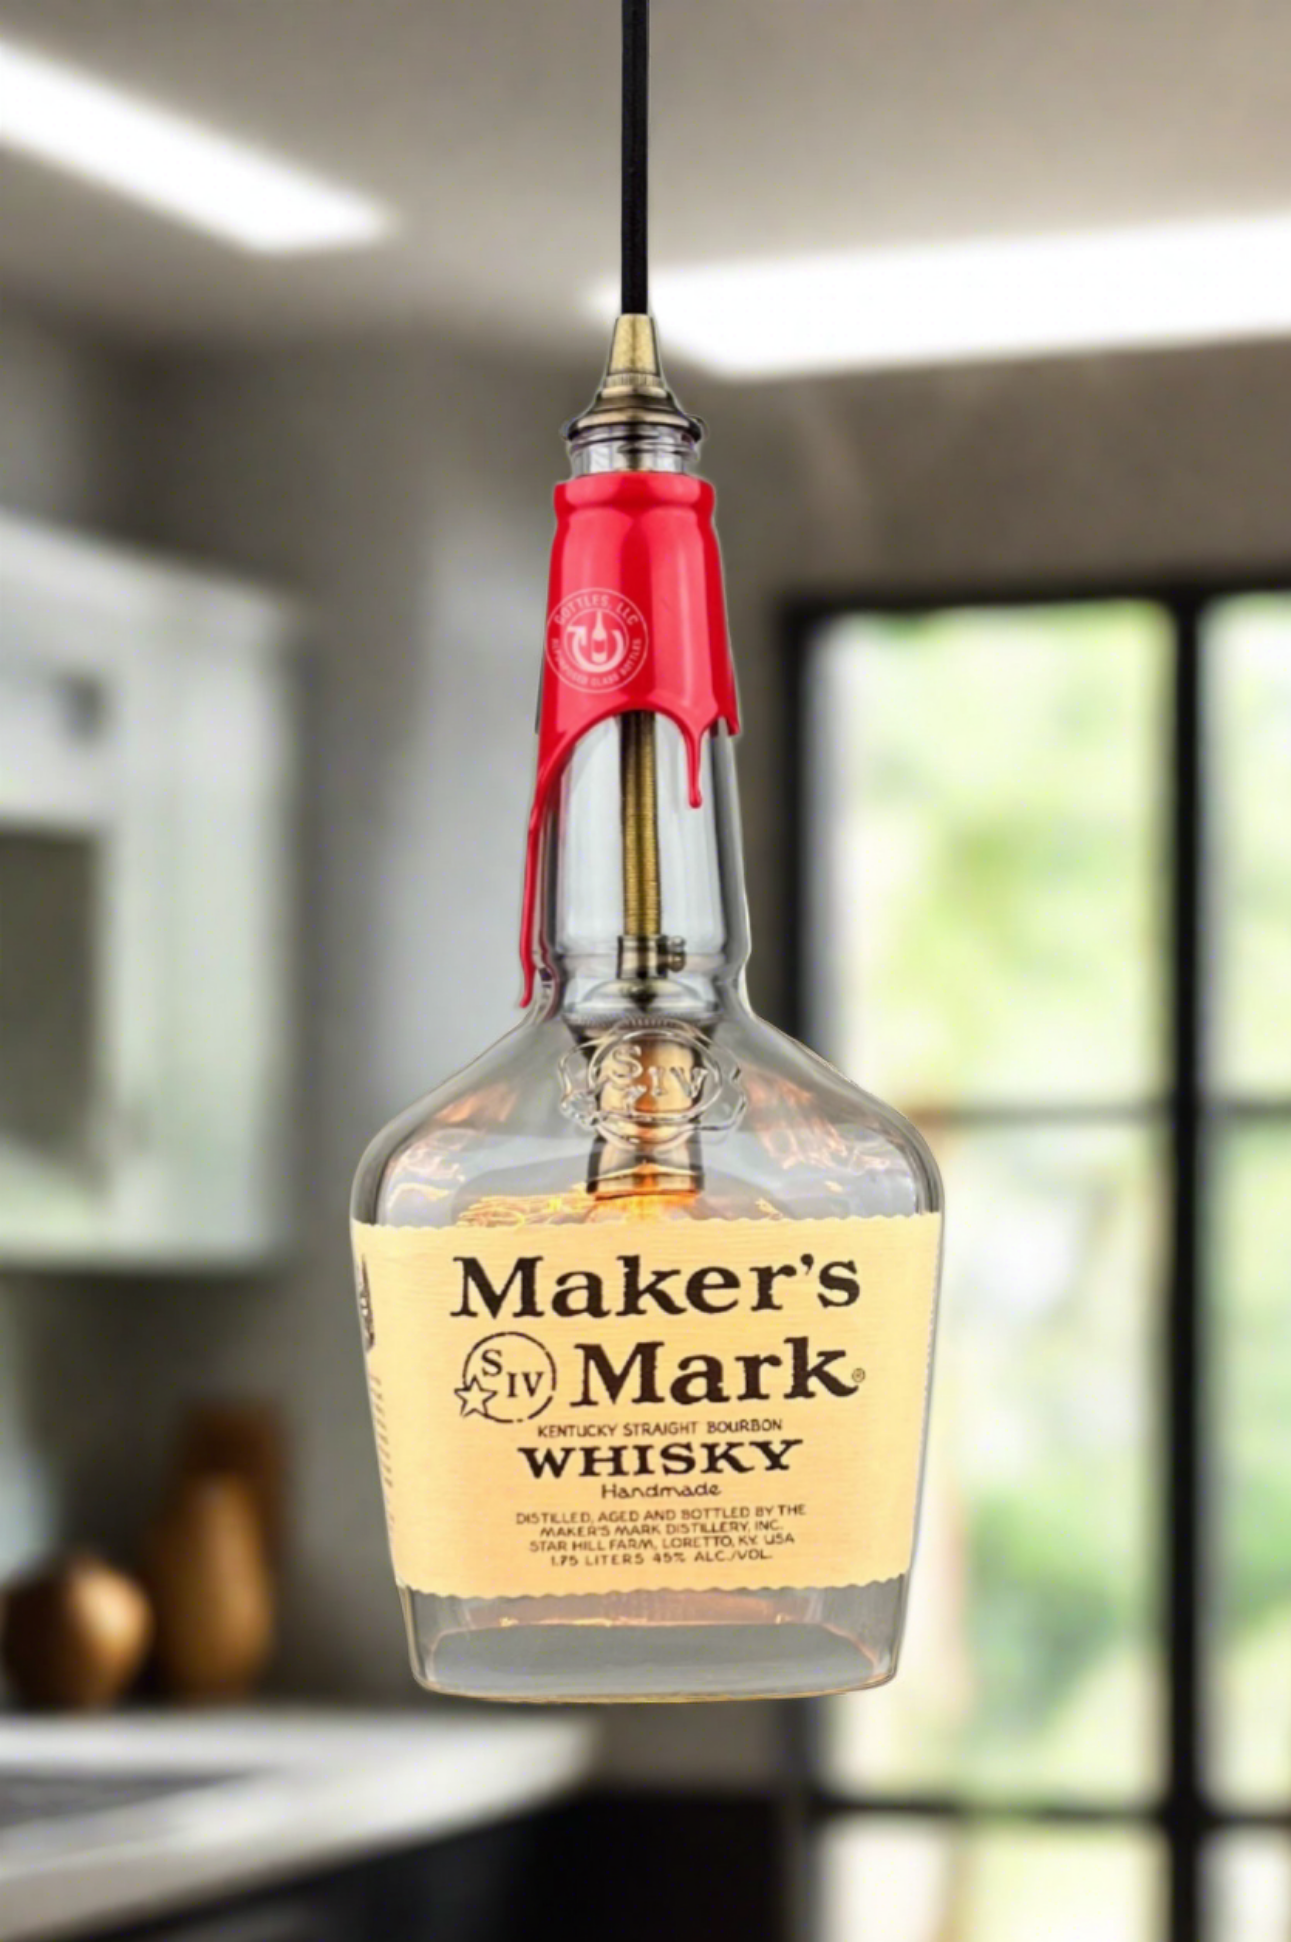 Maker's Mark Whisky 1.75L Bottle Pendant Light